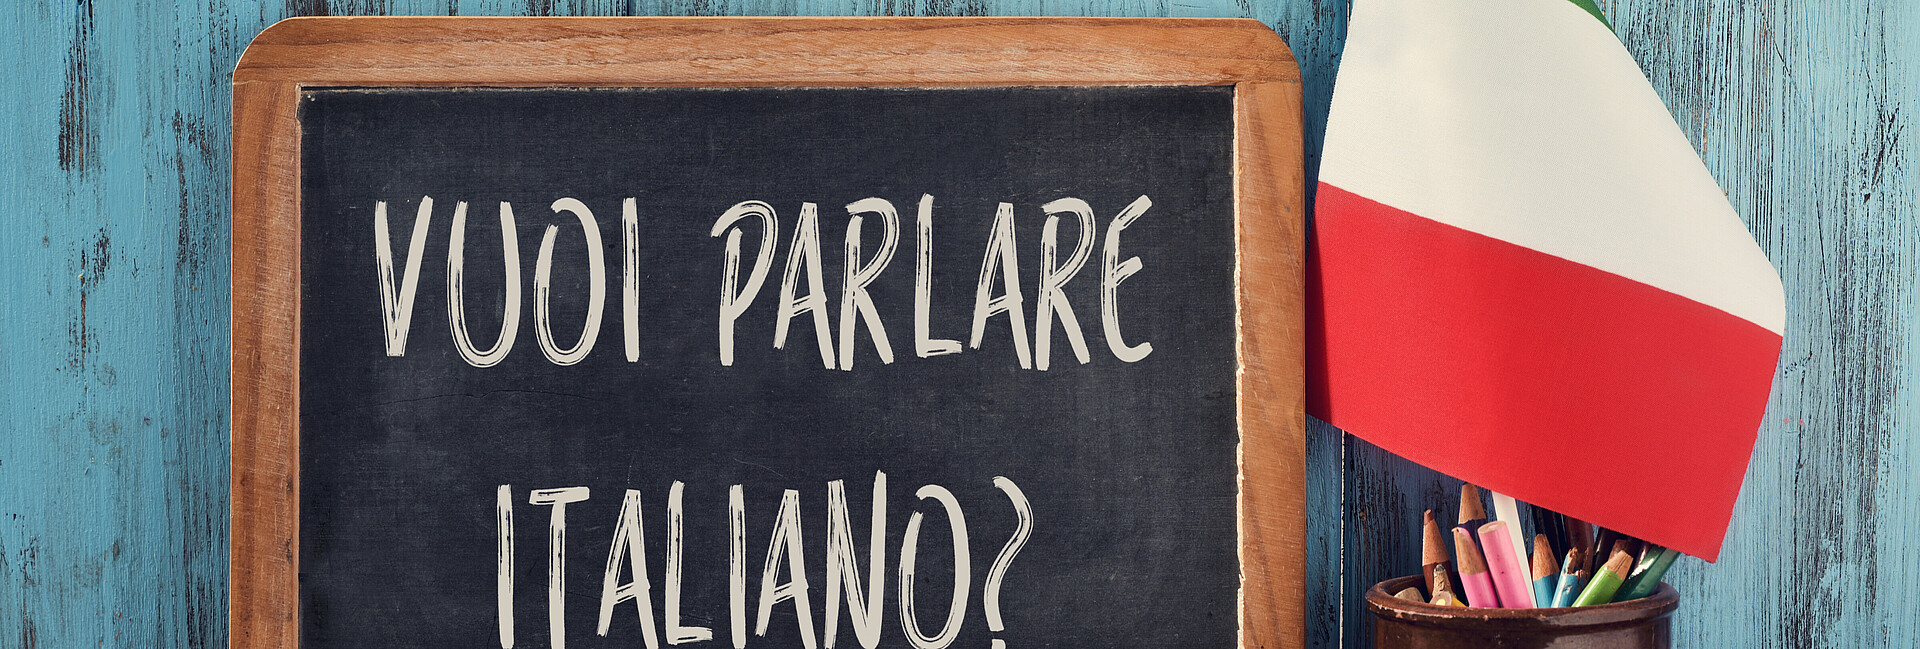 Kreidetafel mit Beschriftung "vuoi parlare italiano?" vor türkisfarbener Wand. Davor ein Gefäß mit Stiften und spanischer Fahne. Rechts neben dem Gefäß liegen zwei übereinander gestapelte Bücher. 